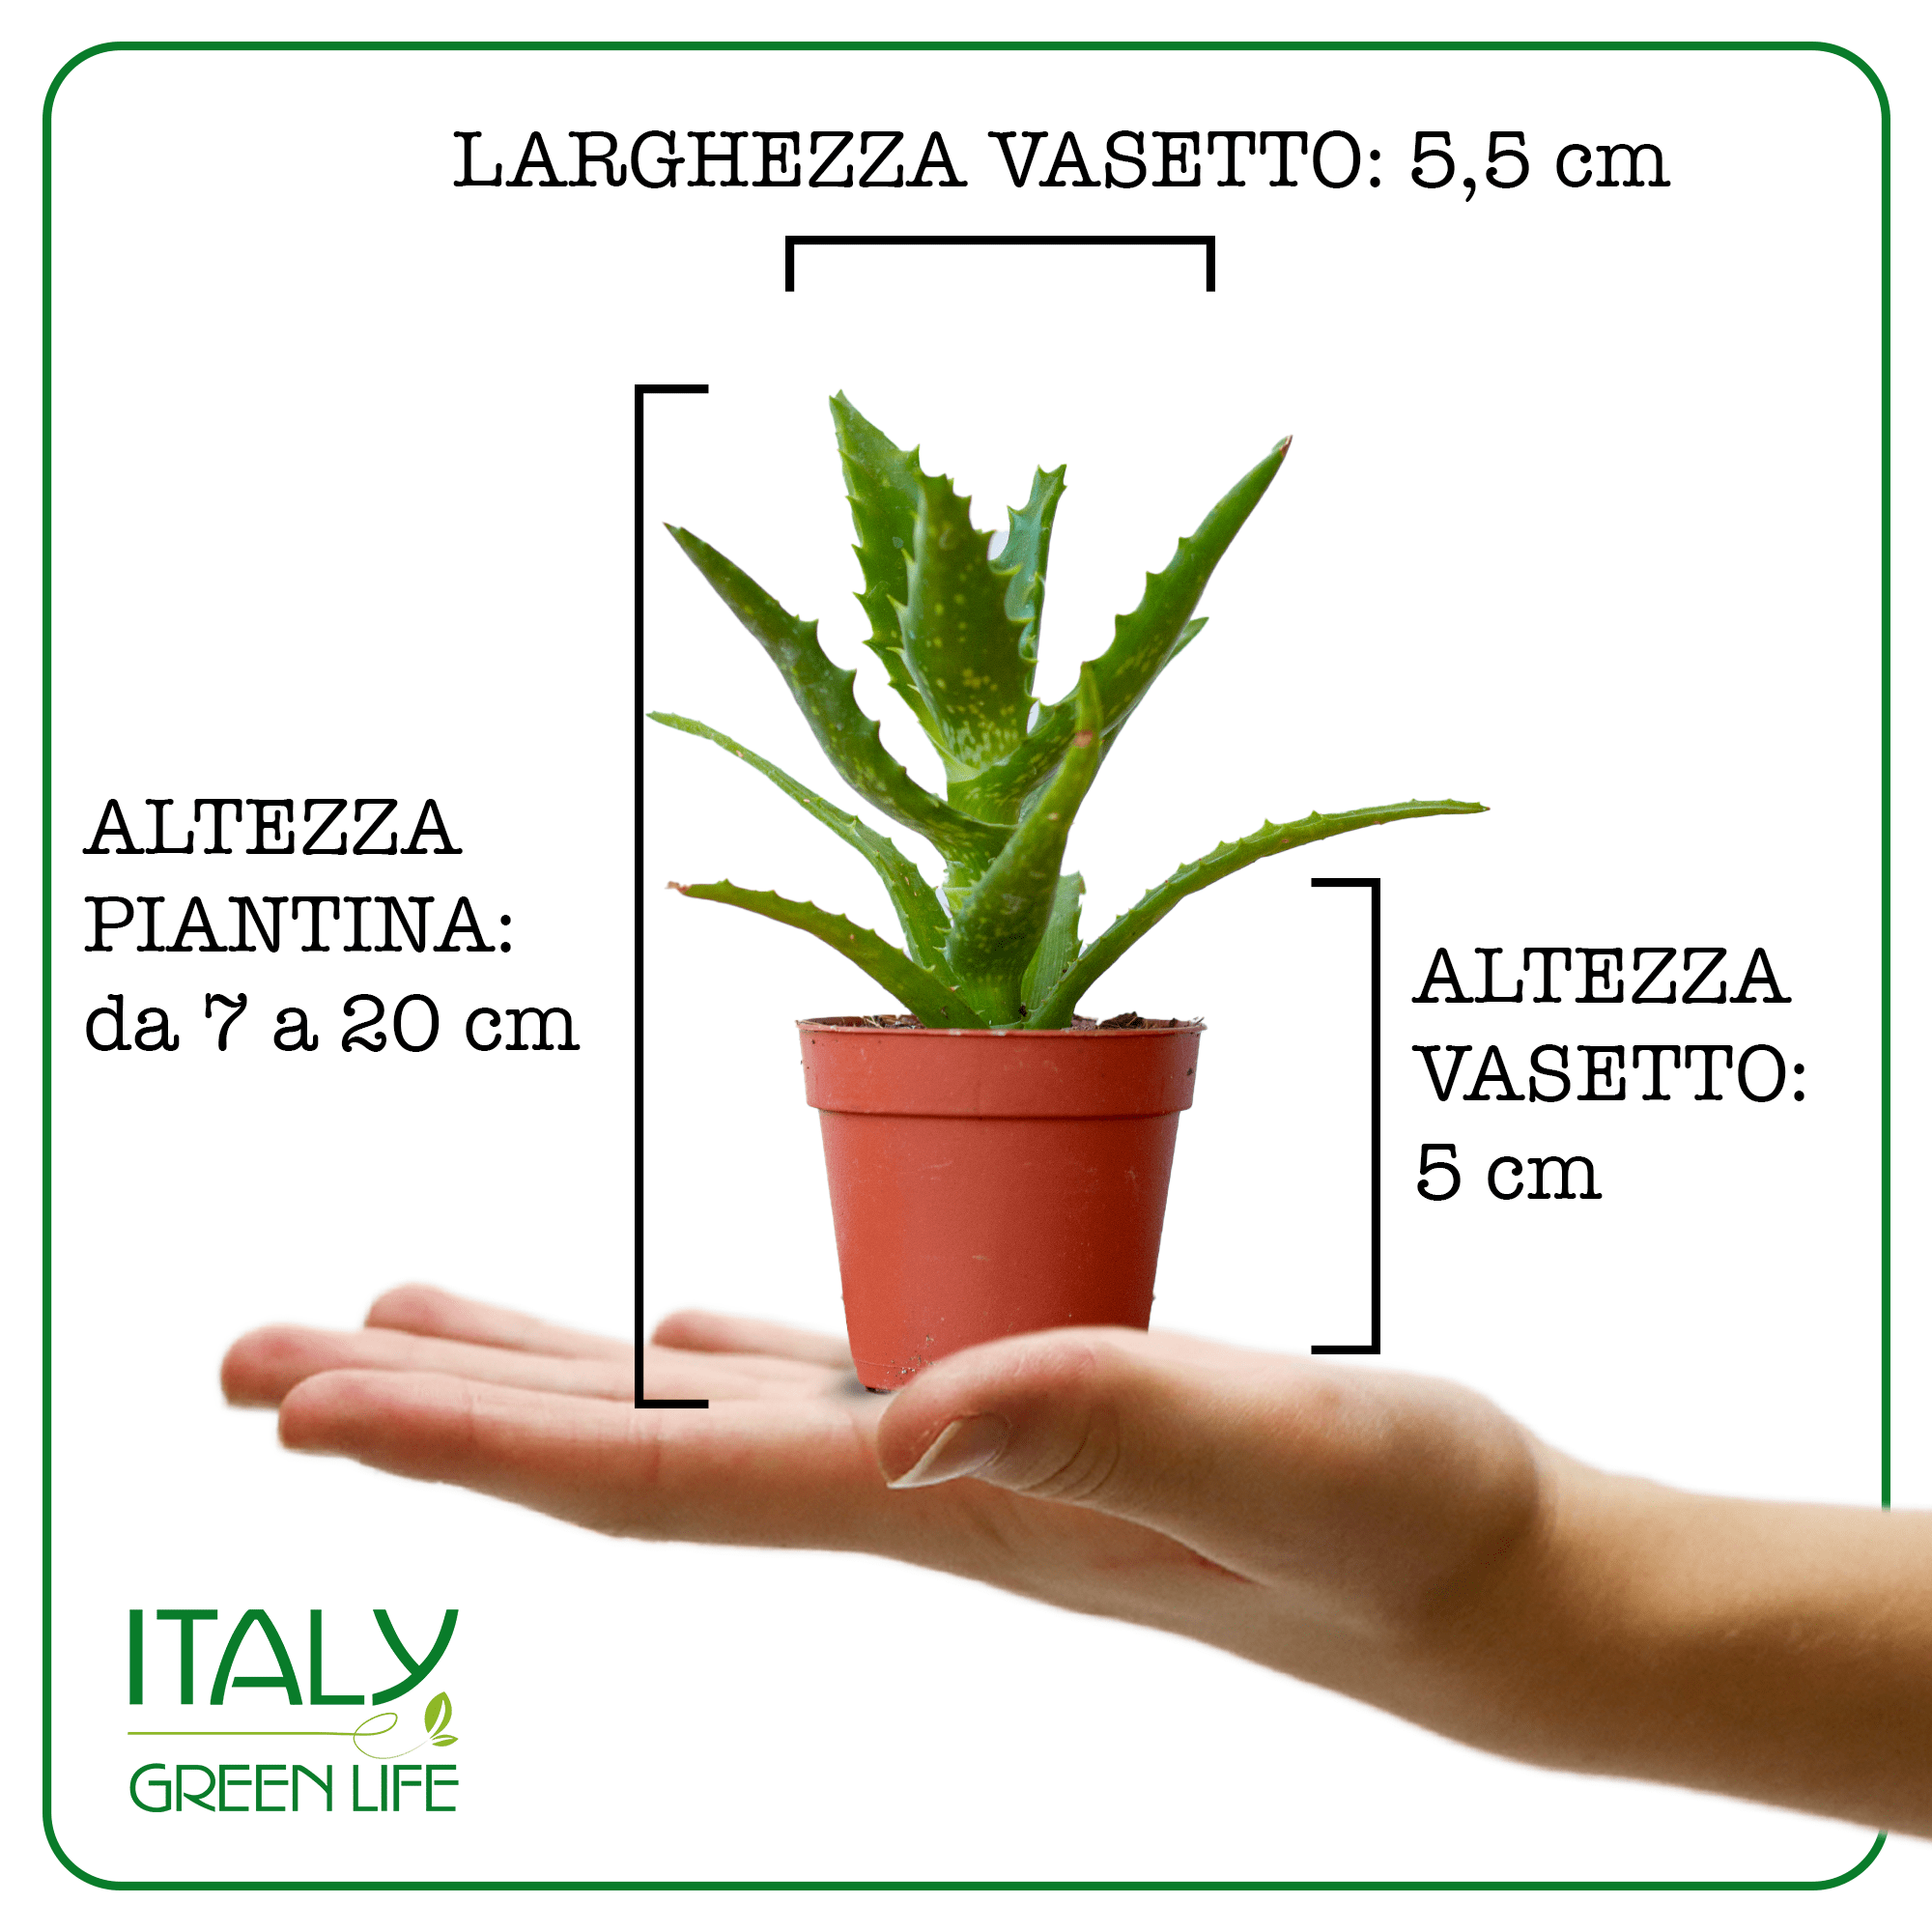 Italy Green Life 3 Piante Grasse Vere Rare Succulenti|Vaso Diametro 5.5cm|Coltivazione Senza Spine|Set di Produzione| Piantine Da Interno, Ufficio, Bomboniere, Scrivania| 3 Piante Vere da Interni - Italy Green Life